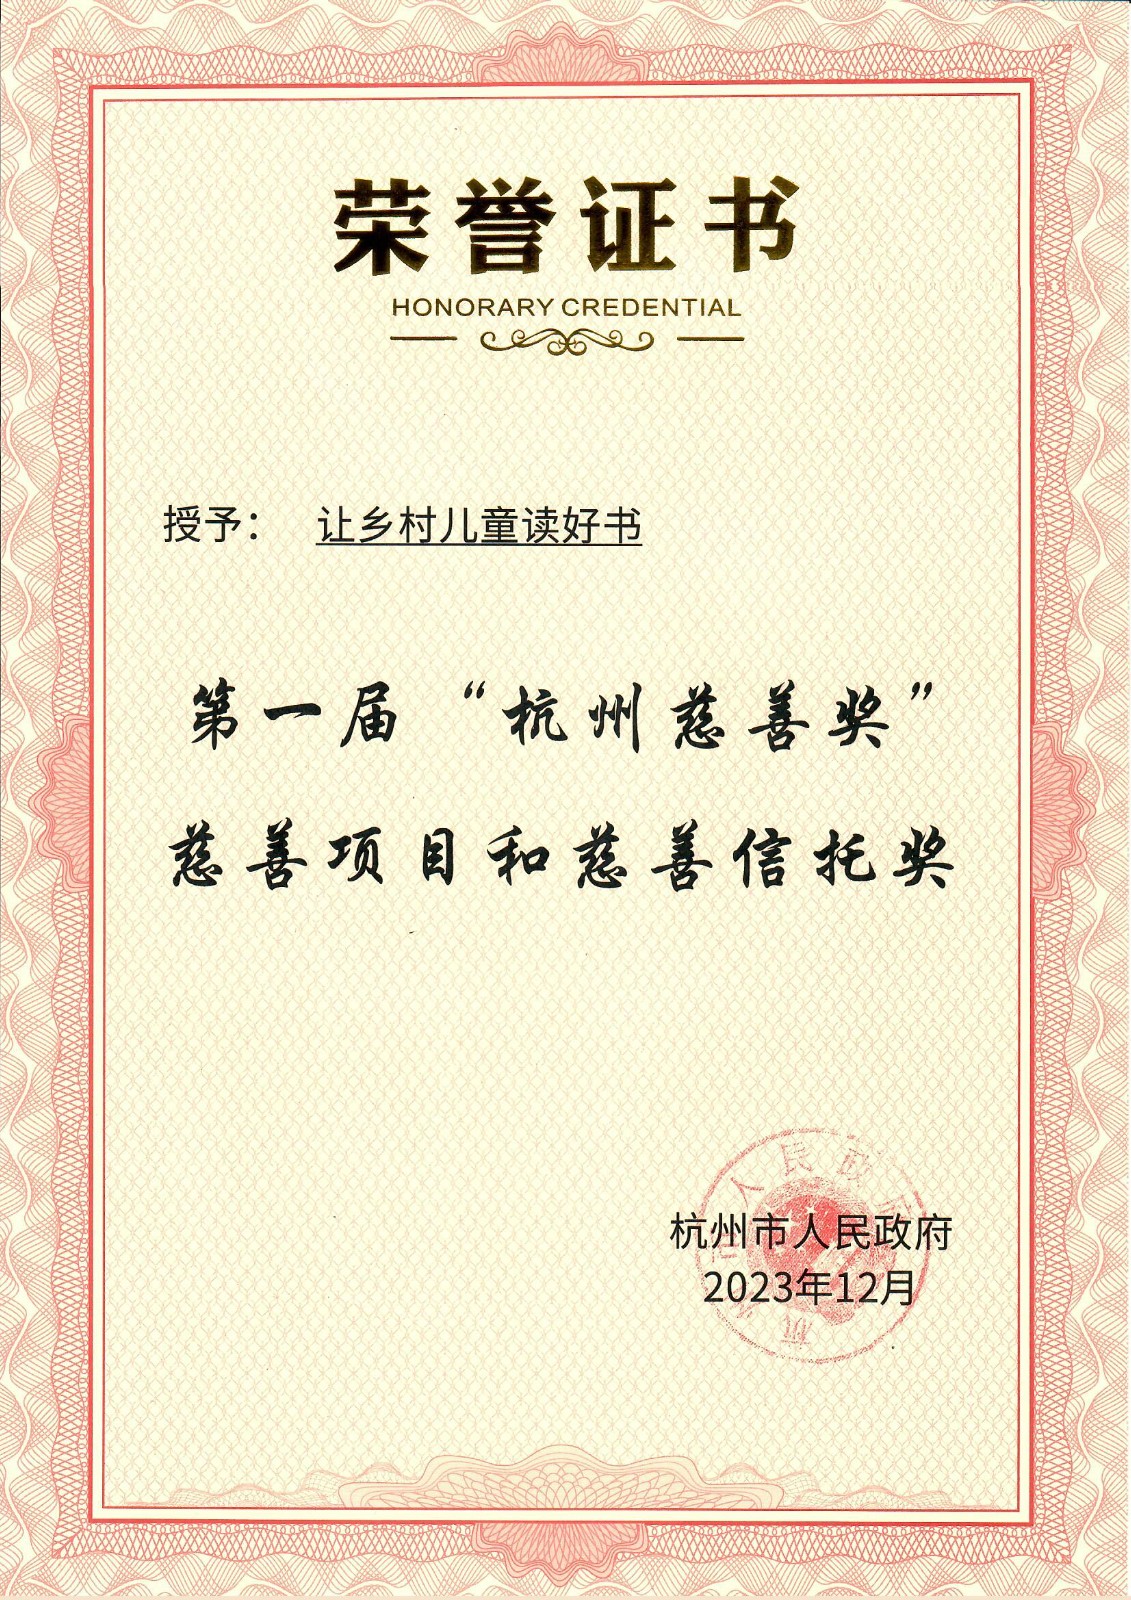 2023年12月-第一届“杭州慈善奖”慈善项目奖.jpg